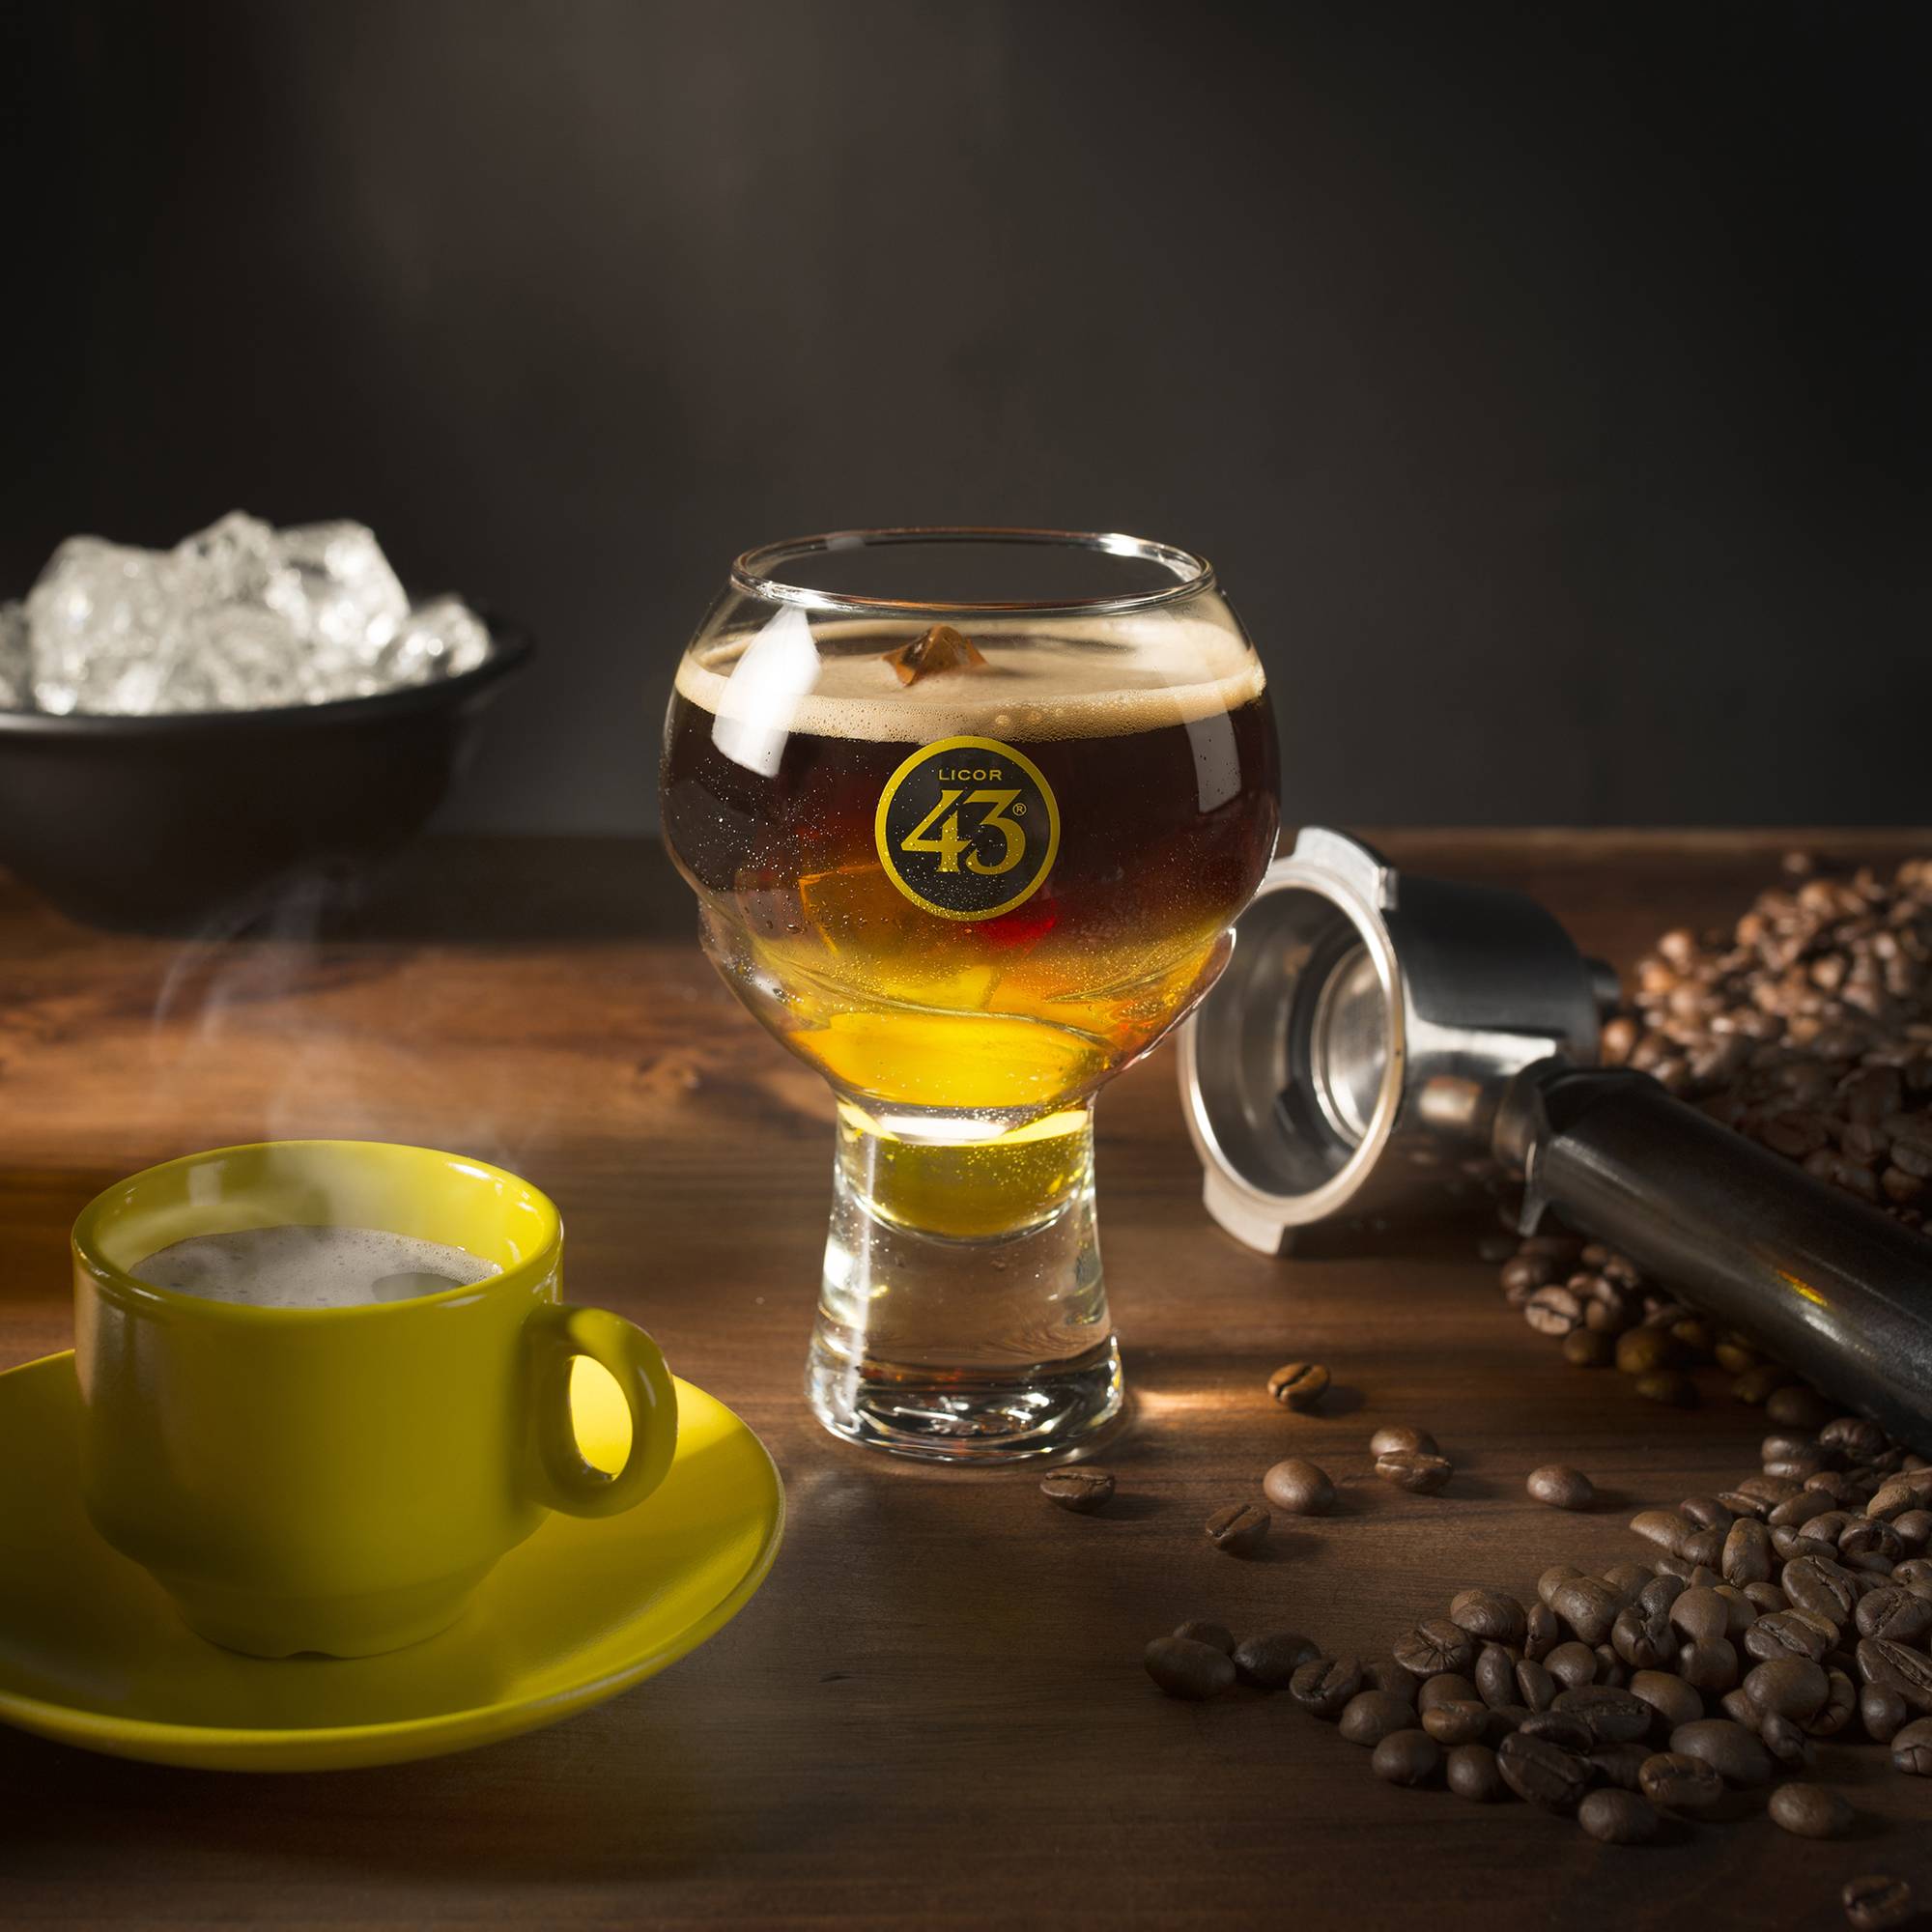 Словарь кофе по-испански. какой кофе просить в испанском кафе? | hispanista